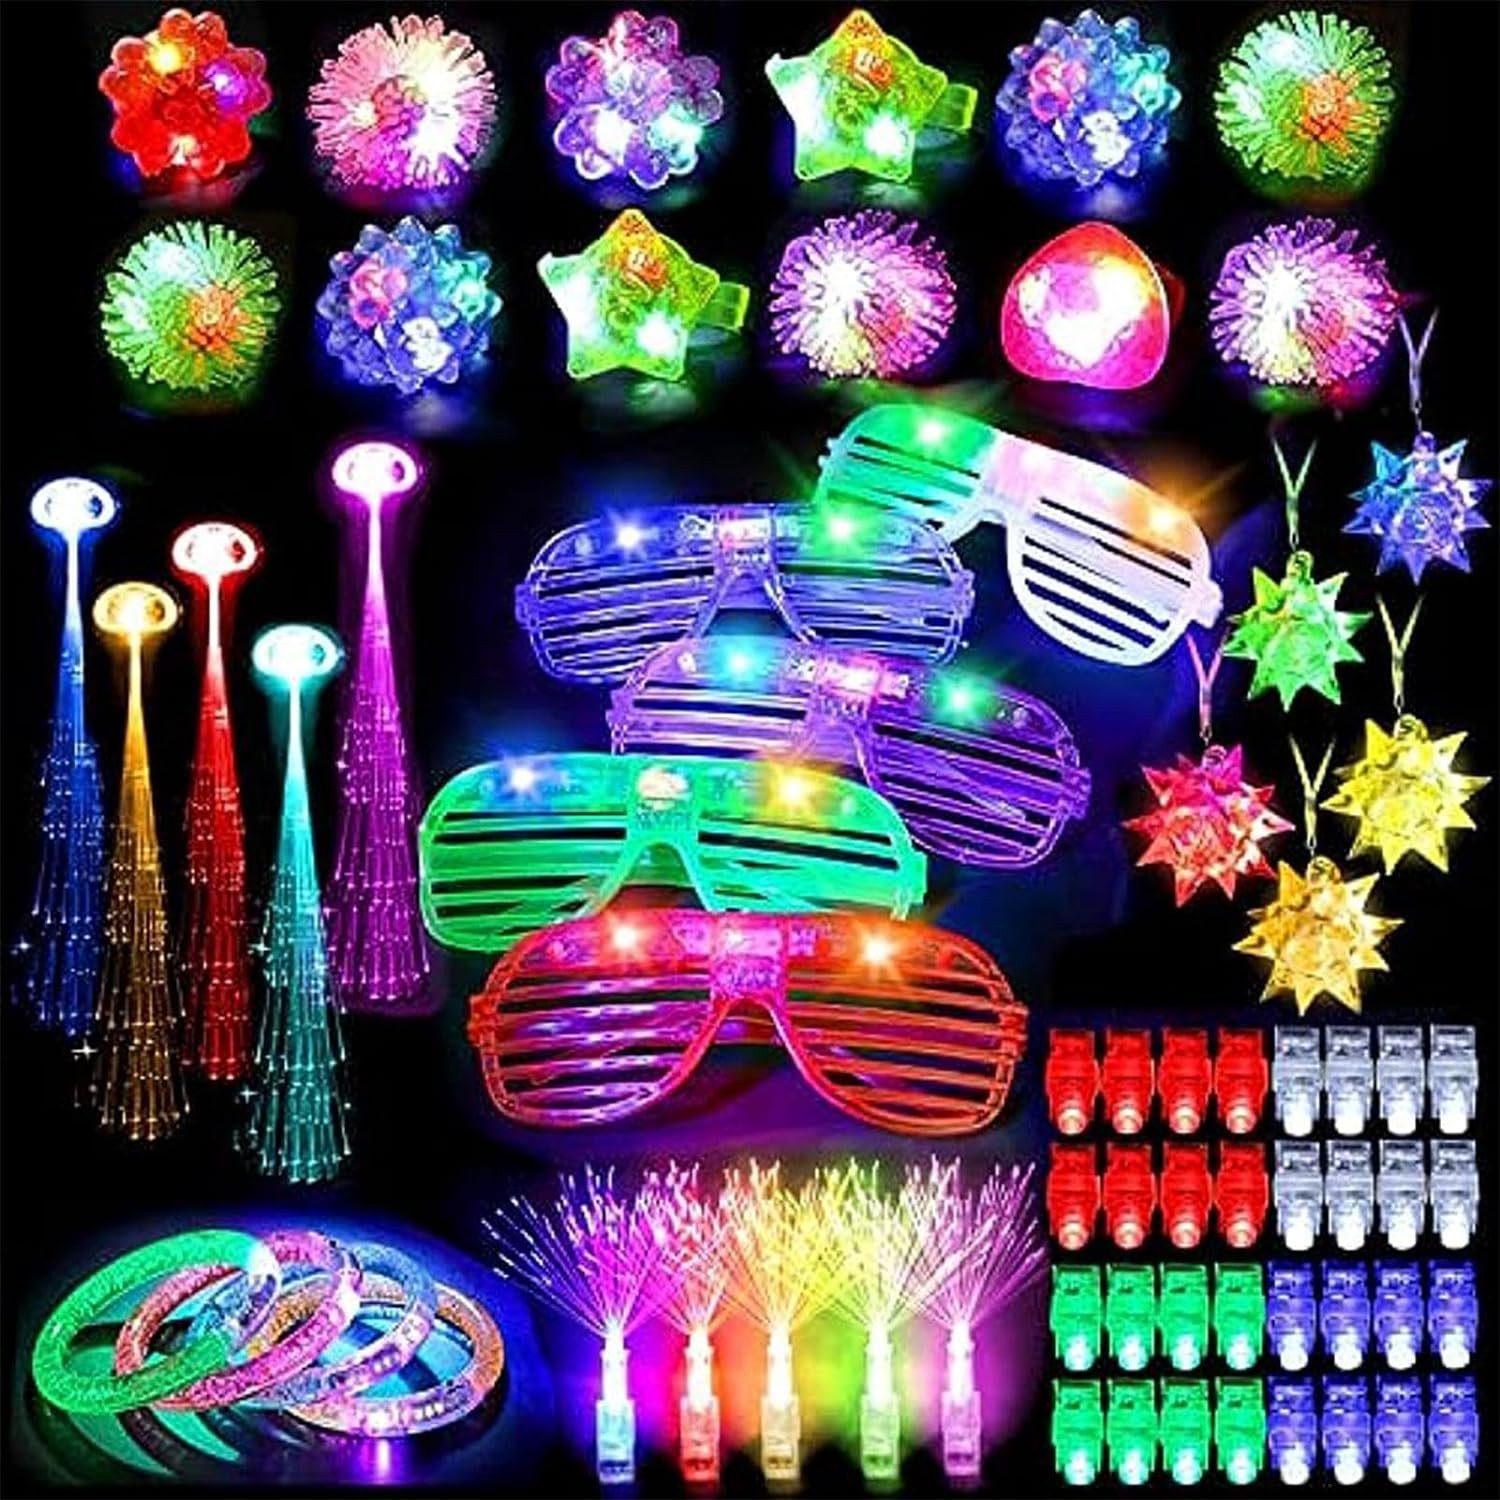 Jioson Partyanzug 80 Stück Partyzubehör LED-Leuchtspielzeug für nächtliche Aktivitäten, für Halloween, Weihnachten, Partys, Camping und mehr